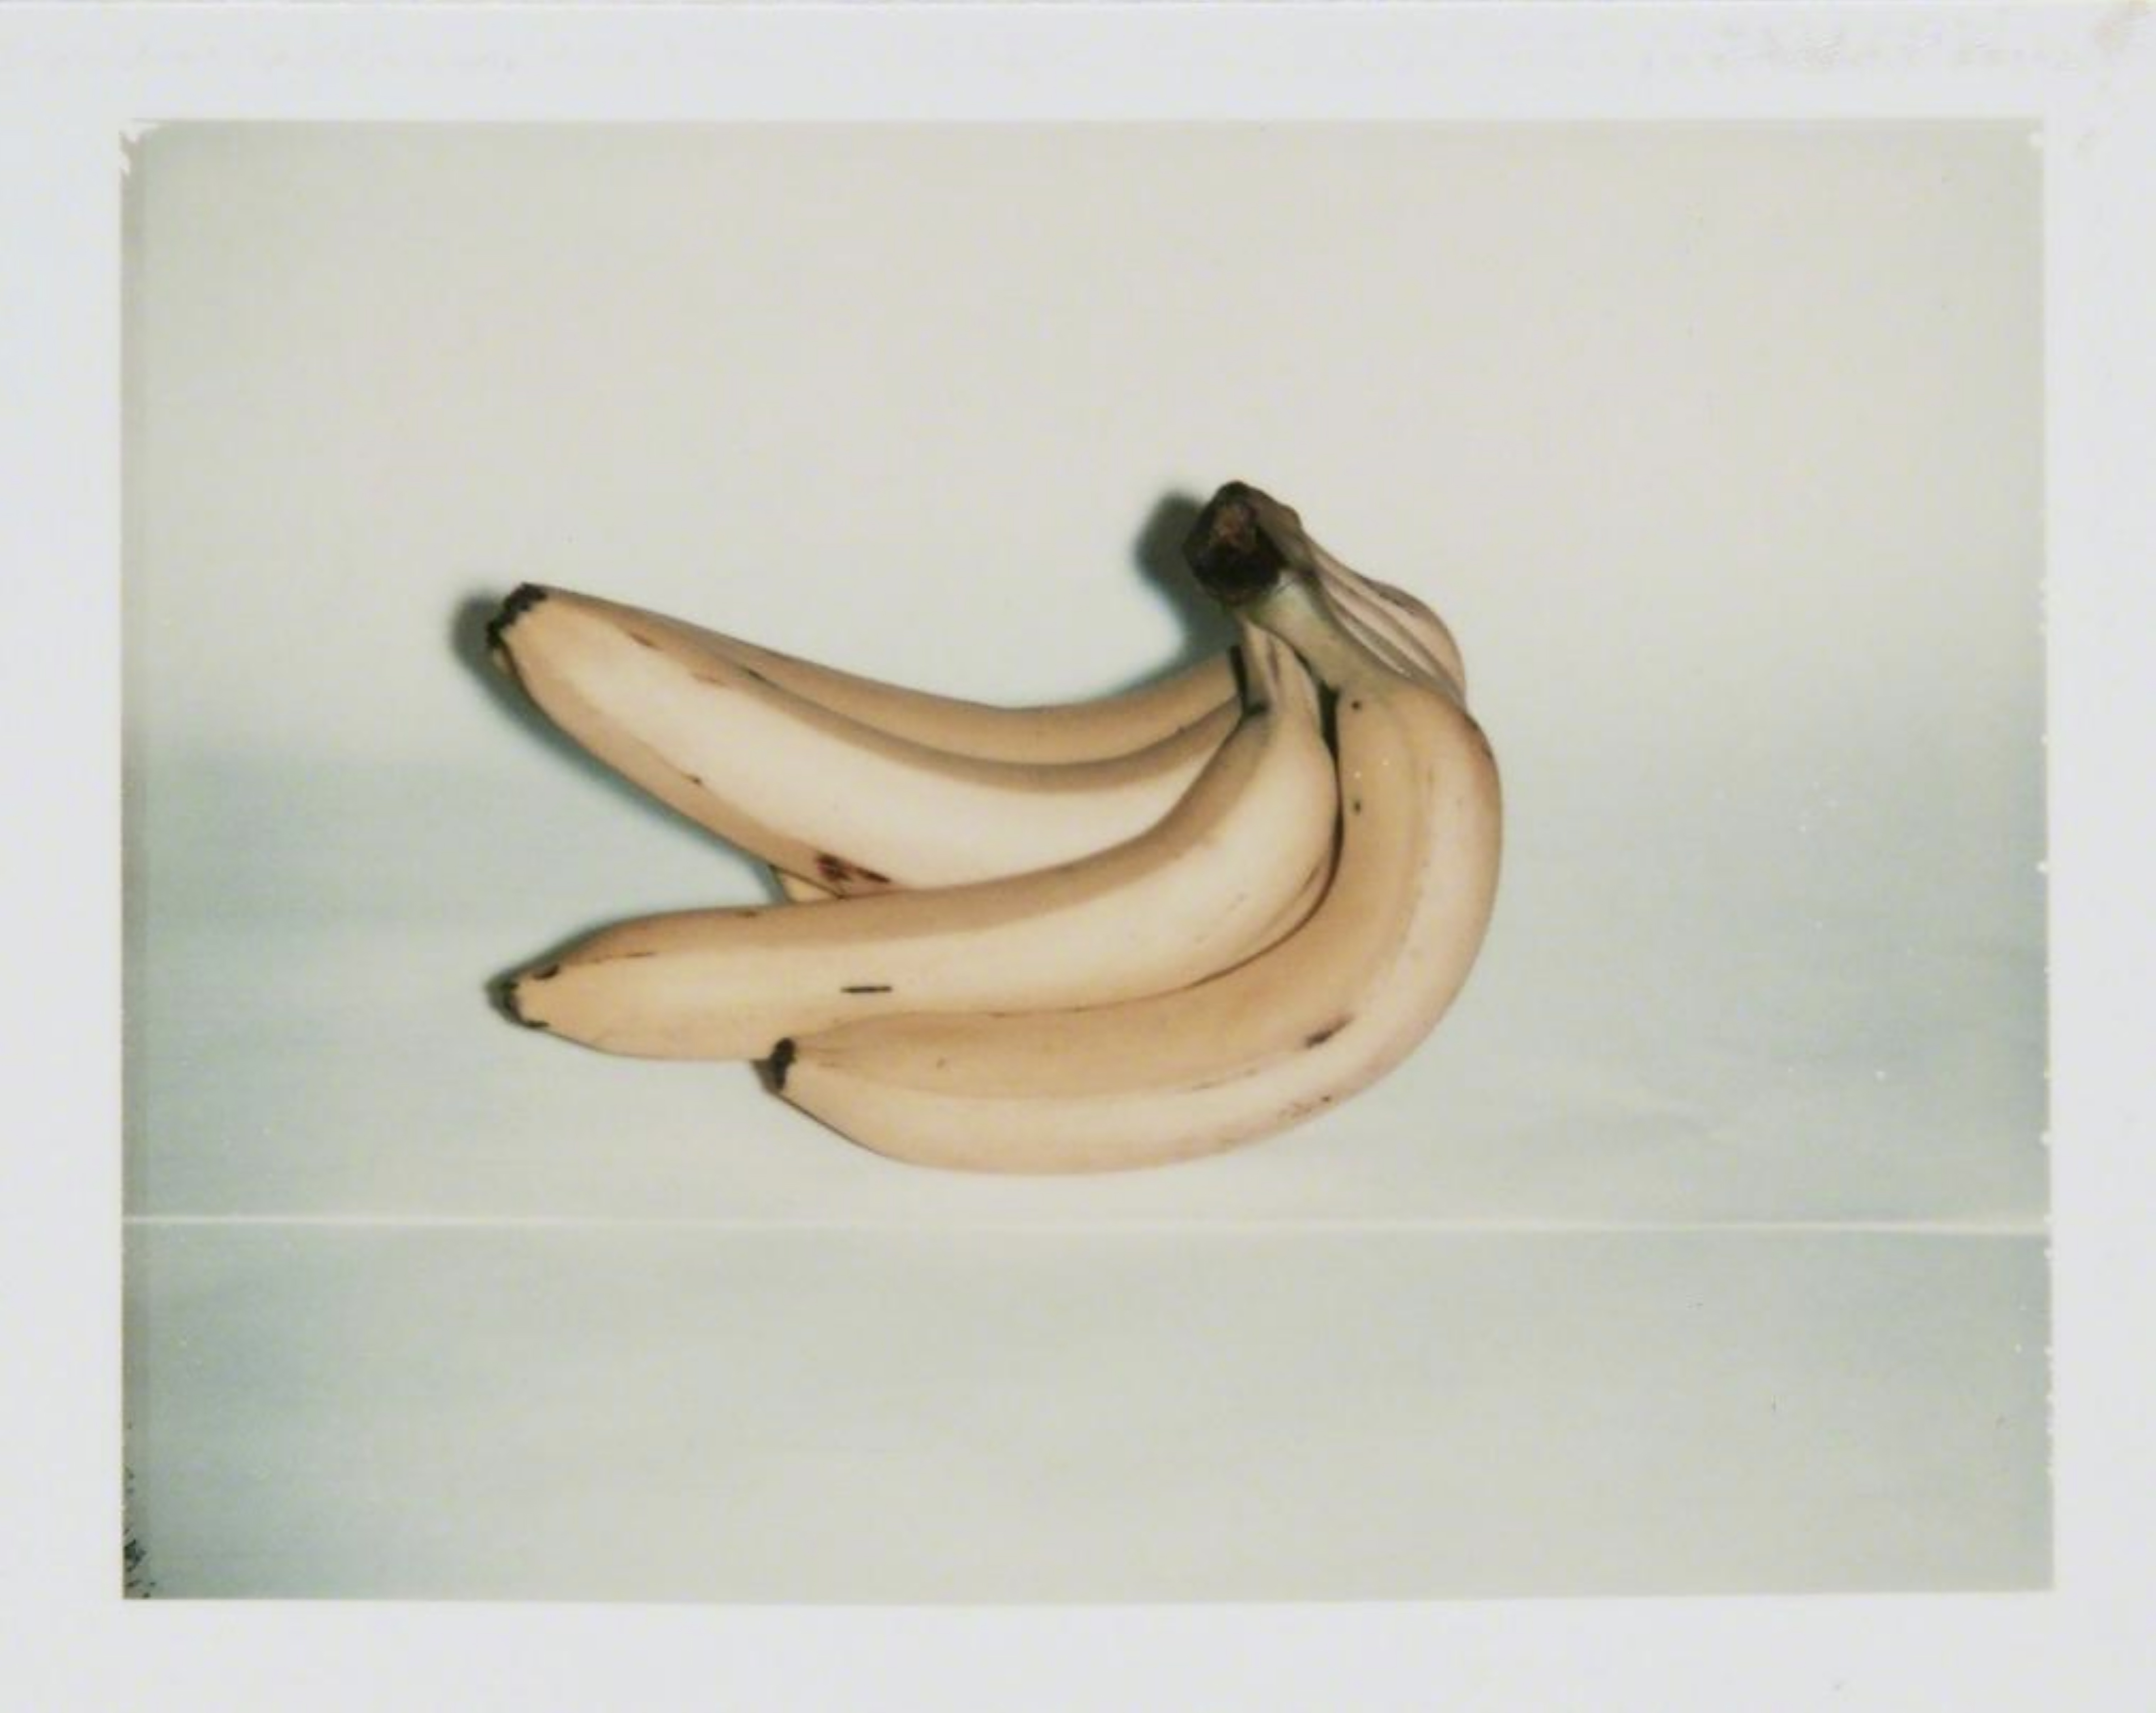 Andy Warhol bananas photo